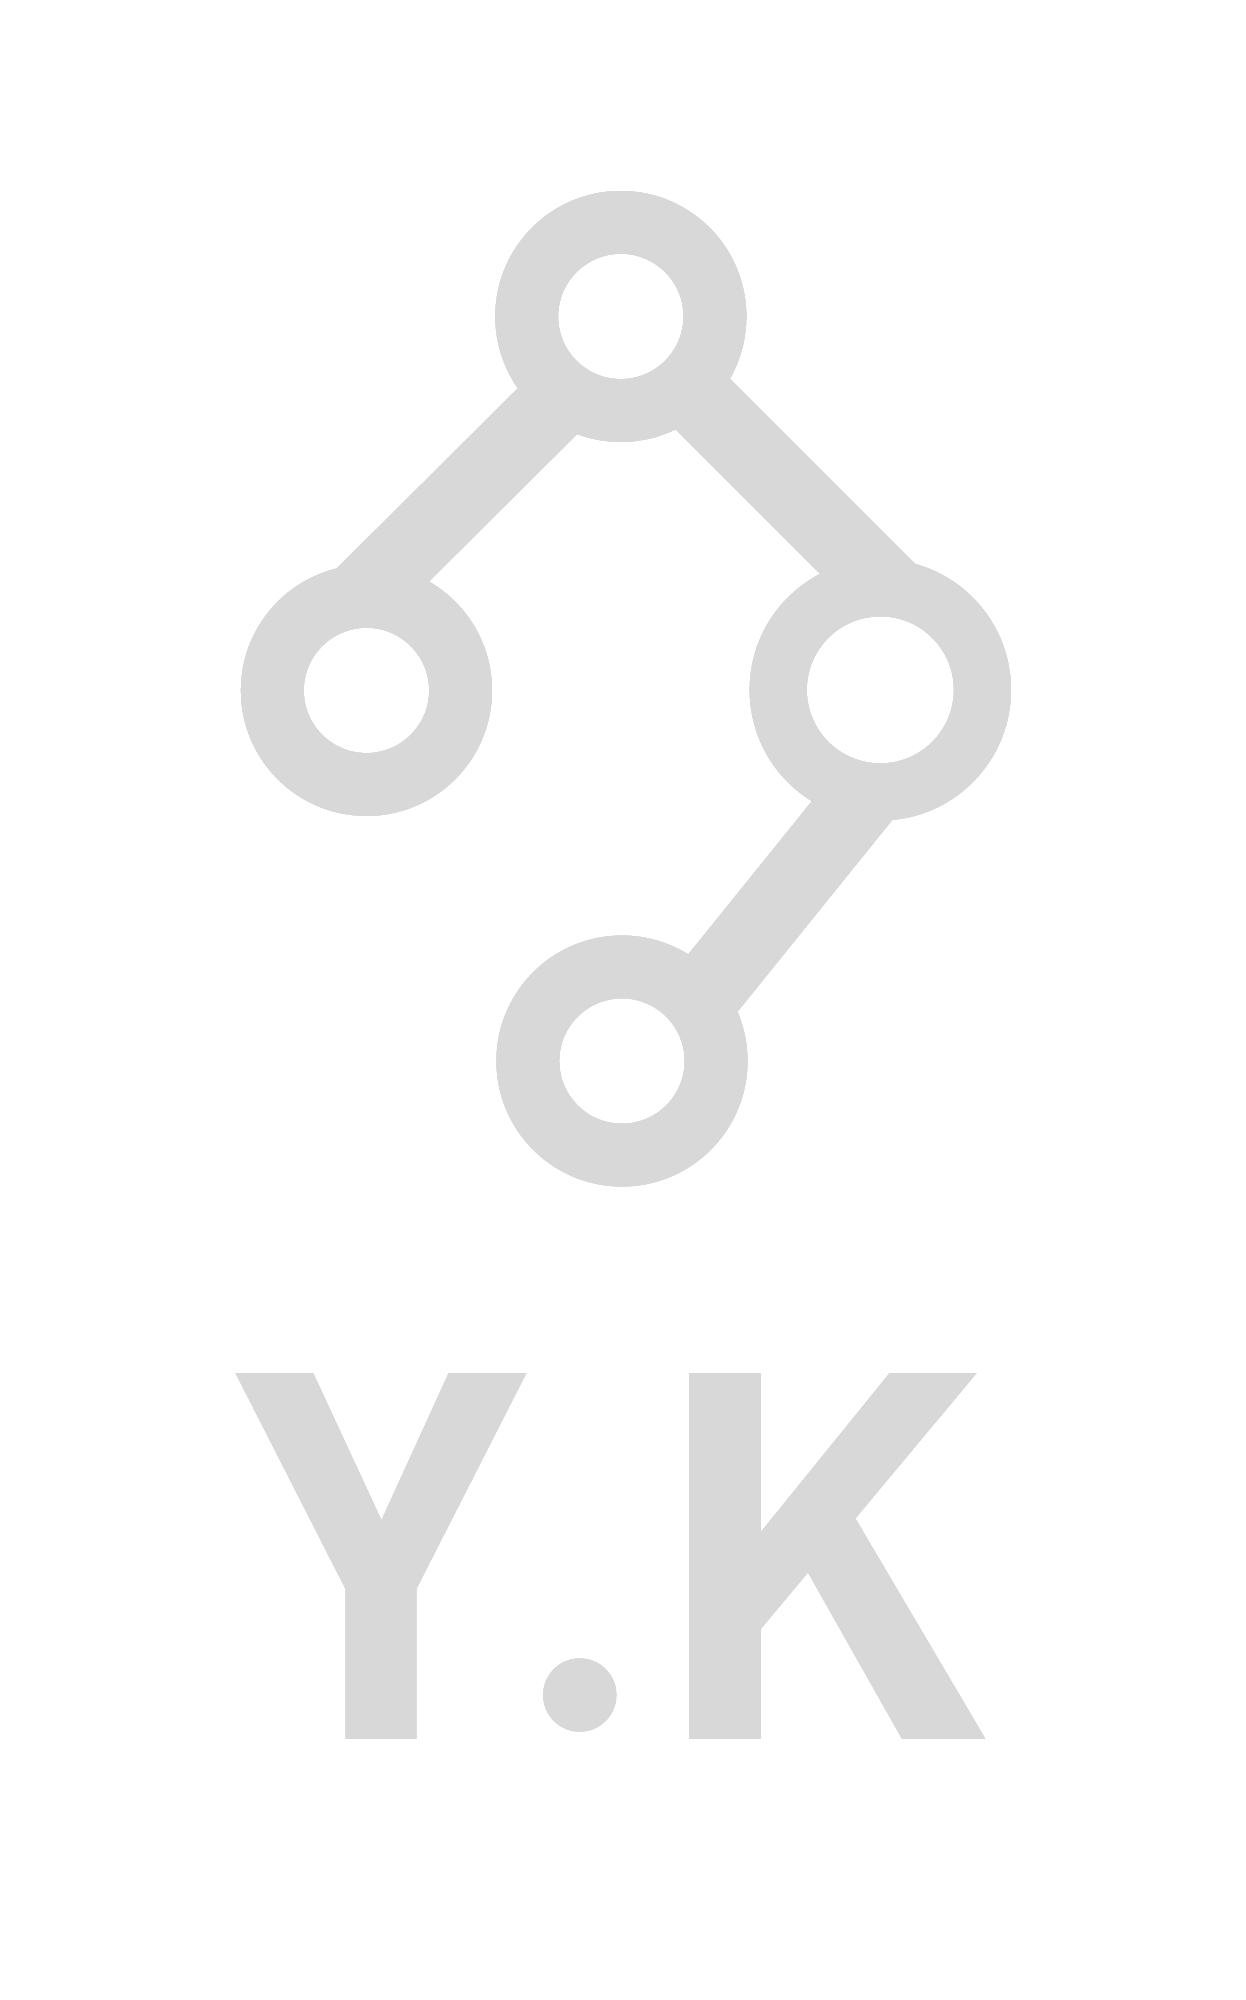 yousefkazerooni-UX